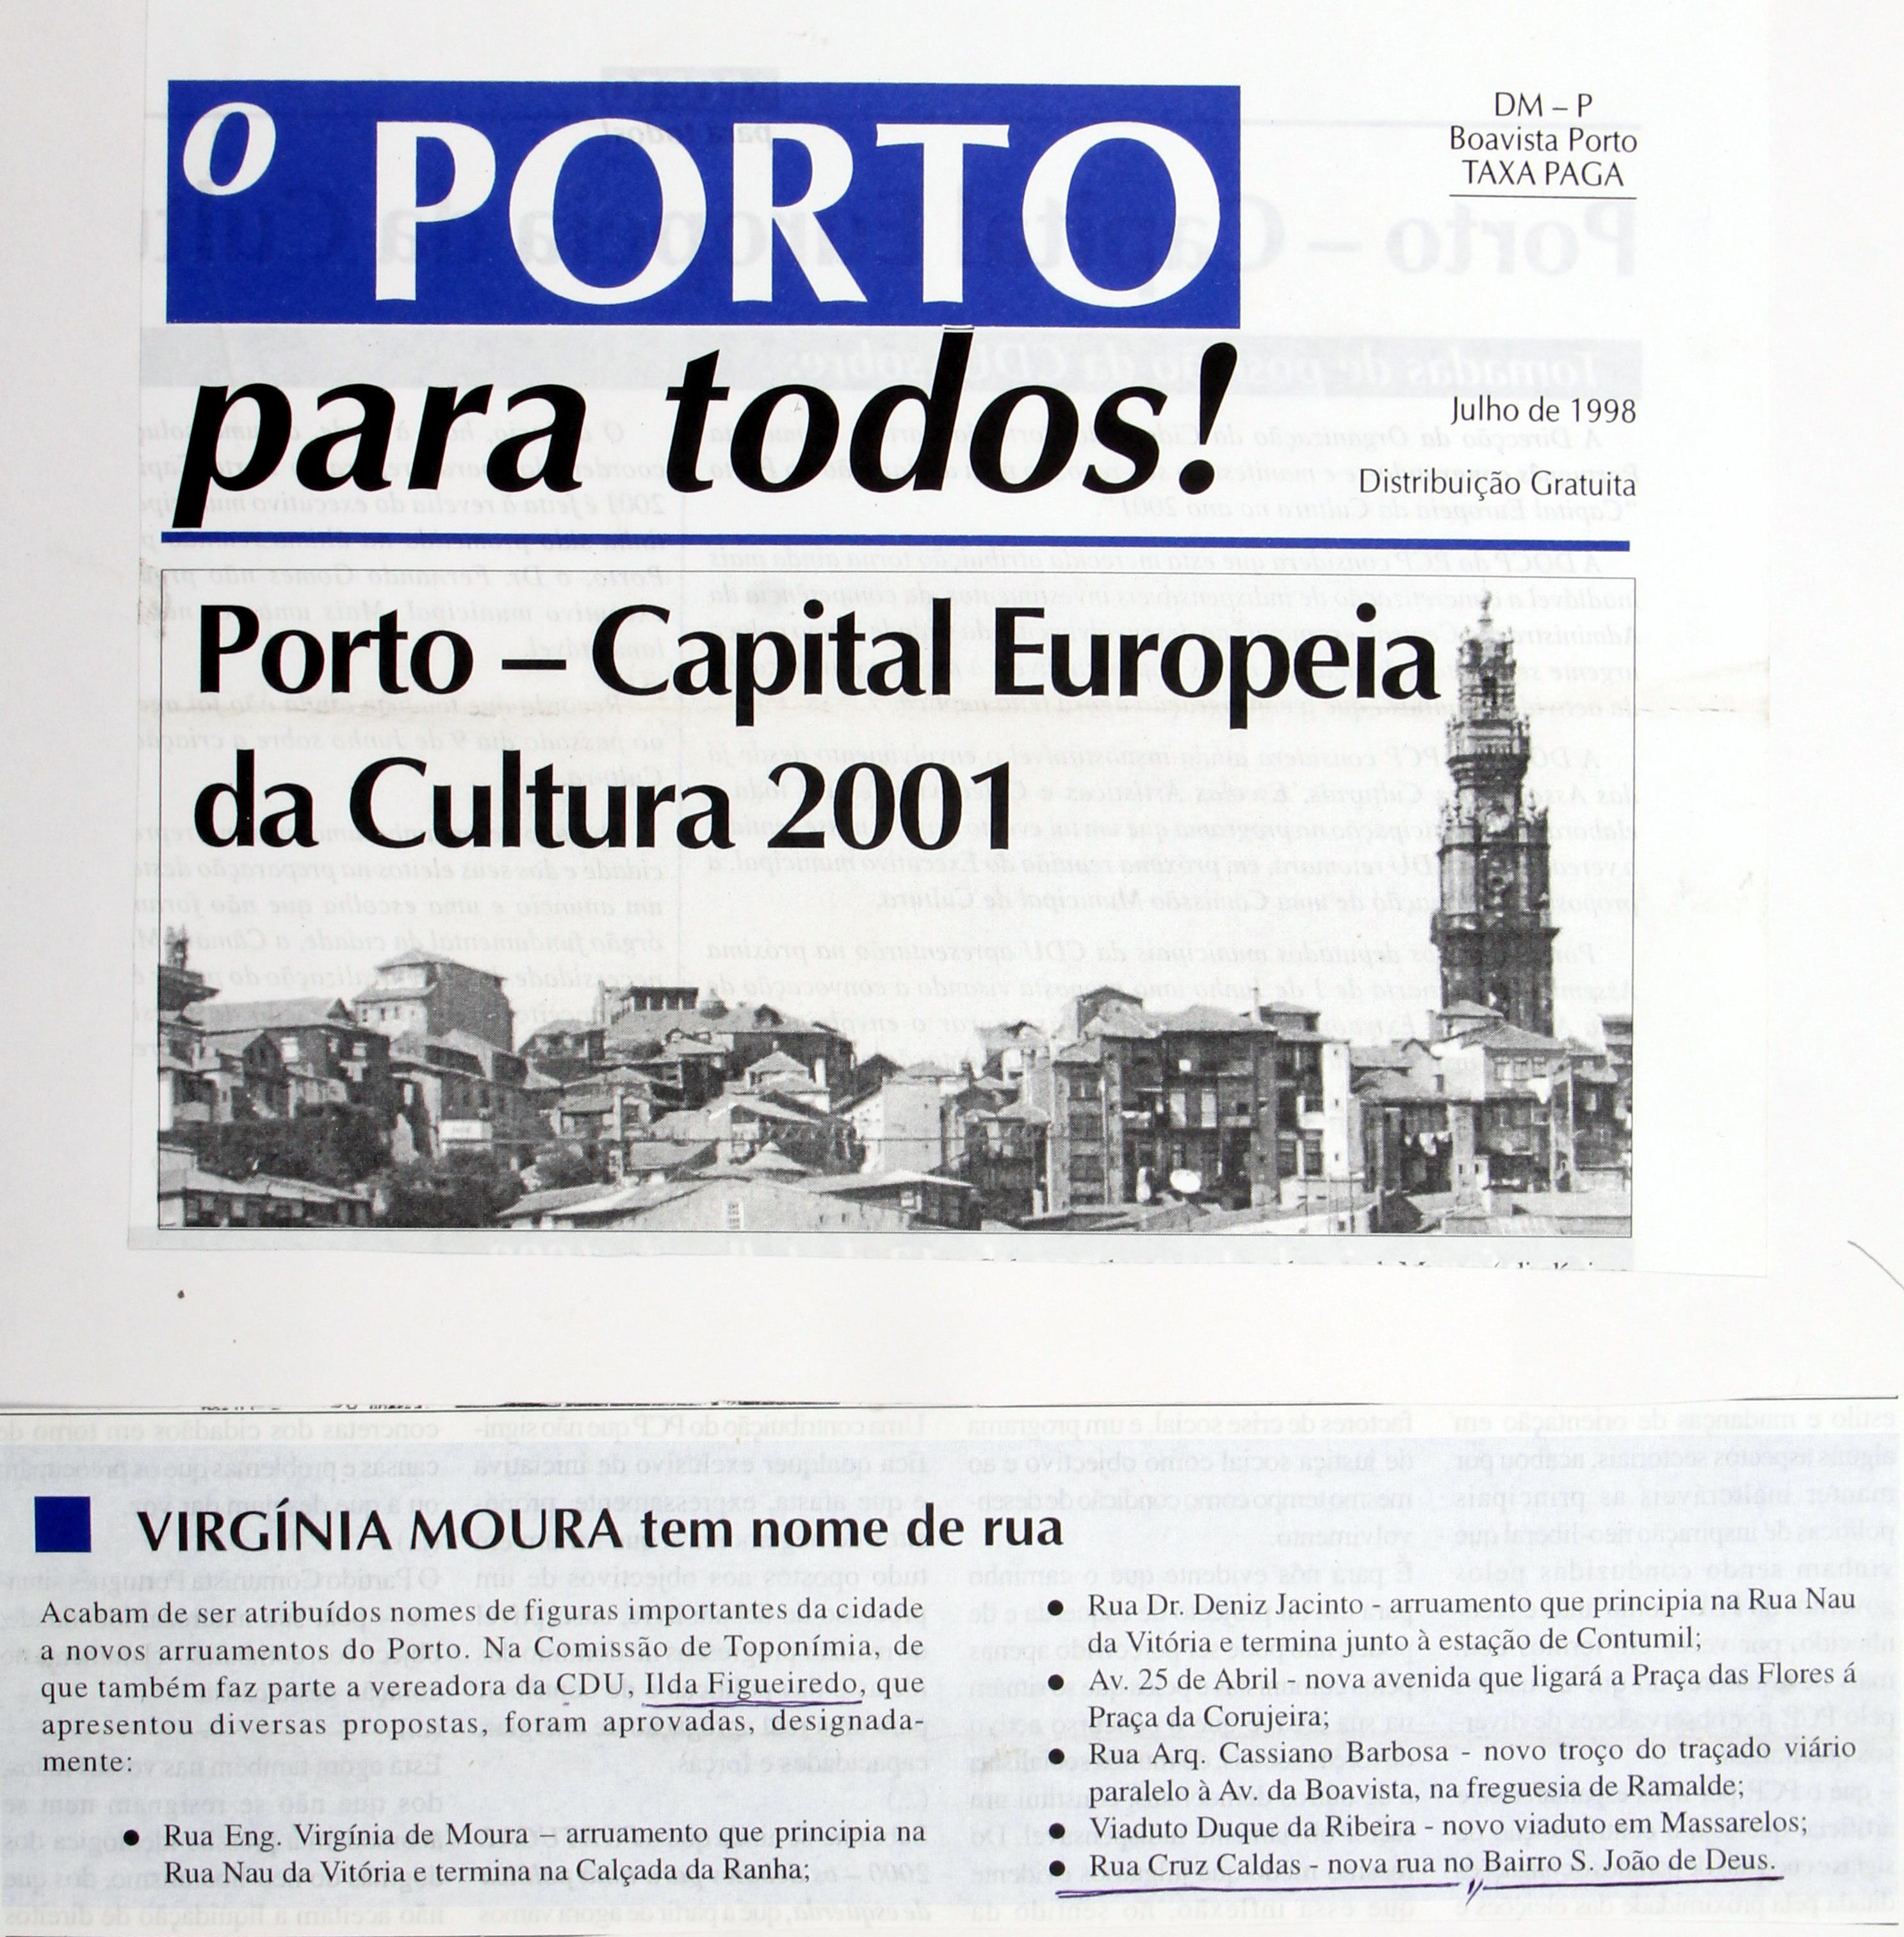 Cruz Caldas (4) : 1966 - 2009 : «O Porto para todos!» : Porto : capital europeia da cultura 2001 : rua Cruz Caldas no Bairro São João de Deus